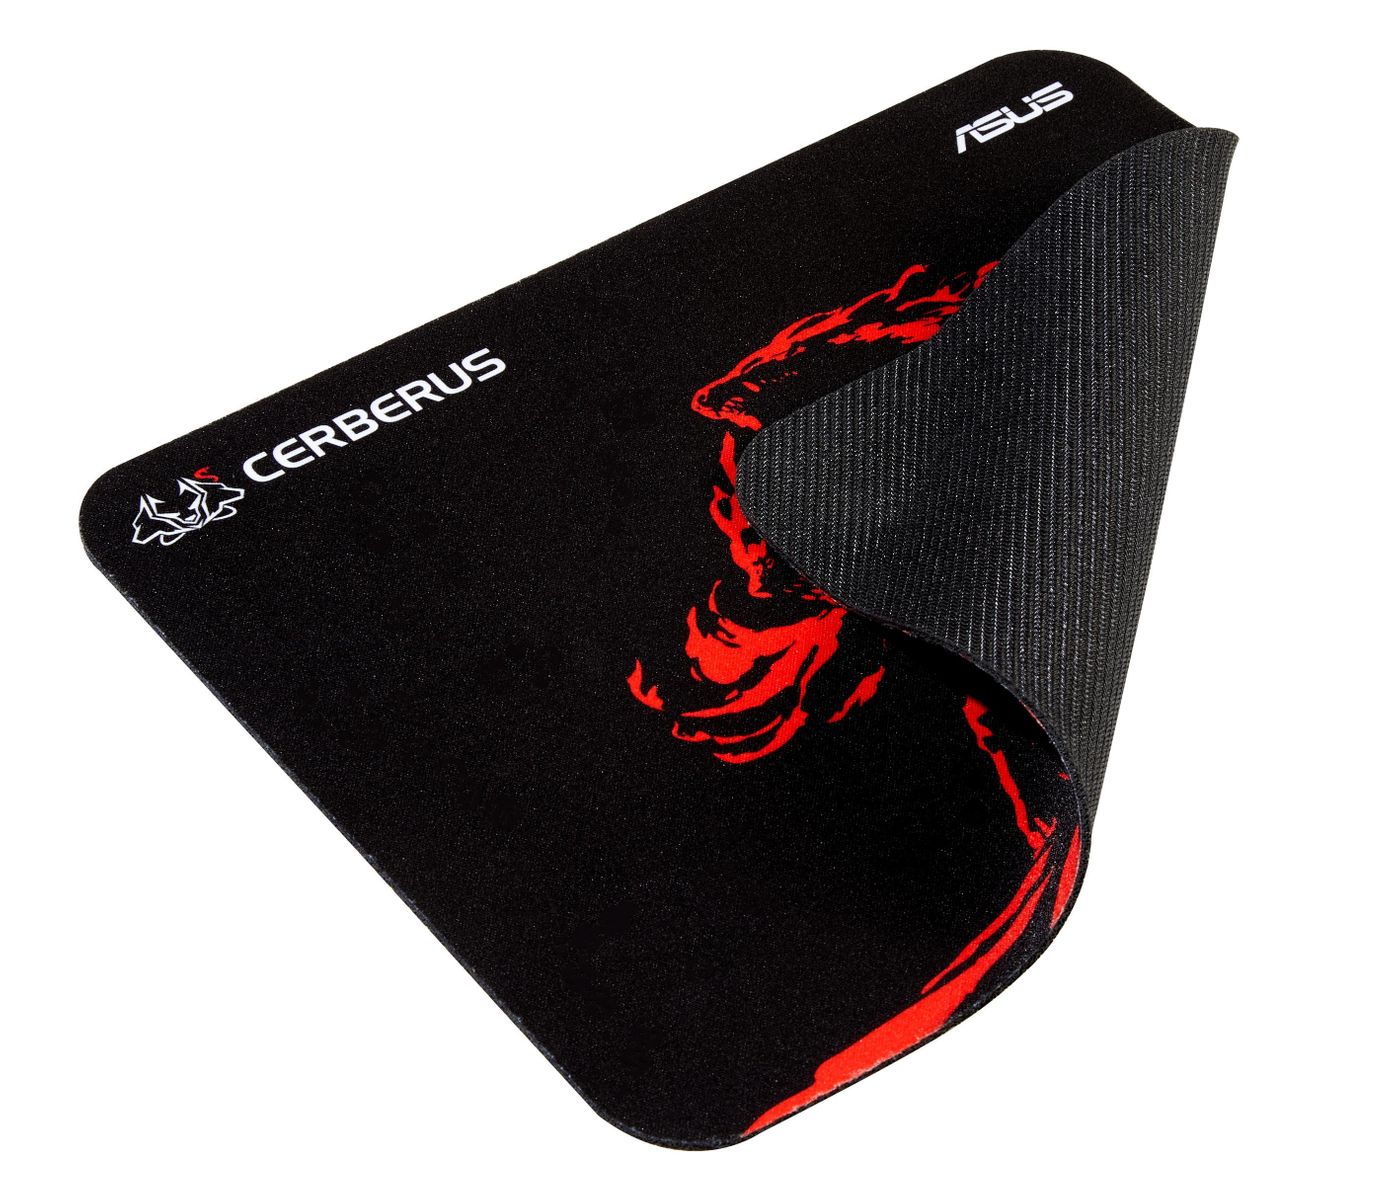 ASUS Cerberus Mat Mini Soft Gaming Mauspad (250mm x 210mm) schwarz/rot